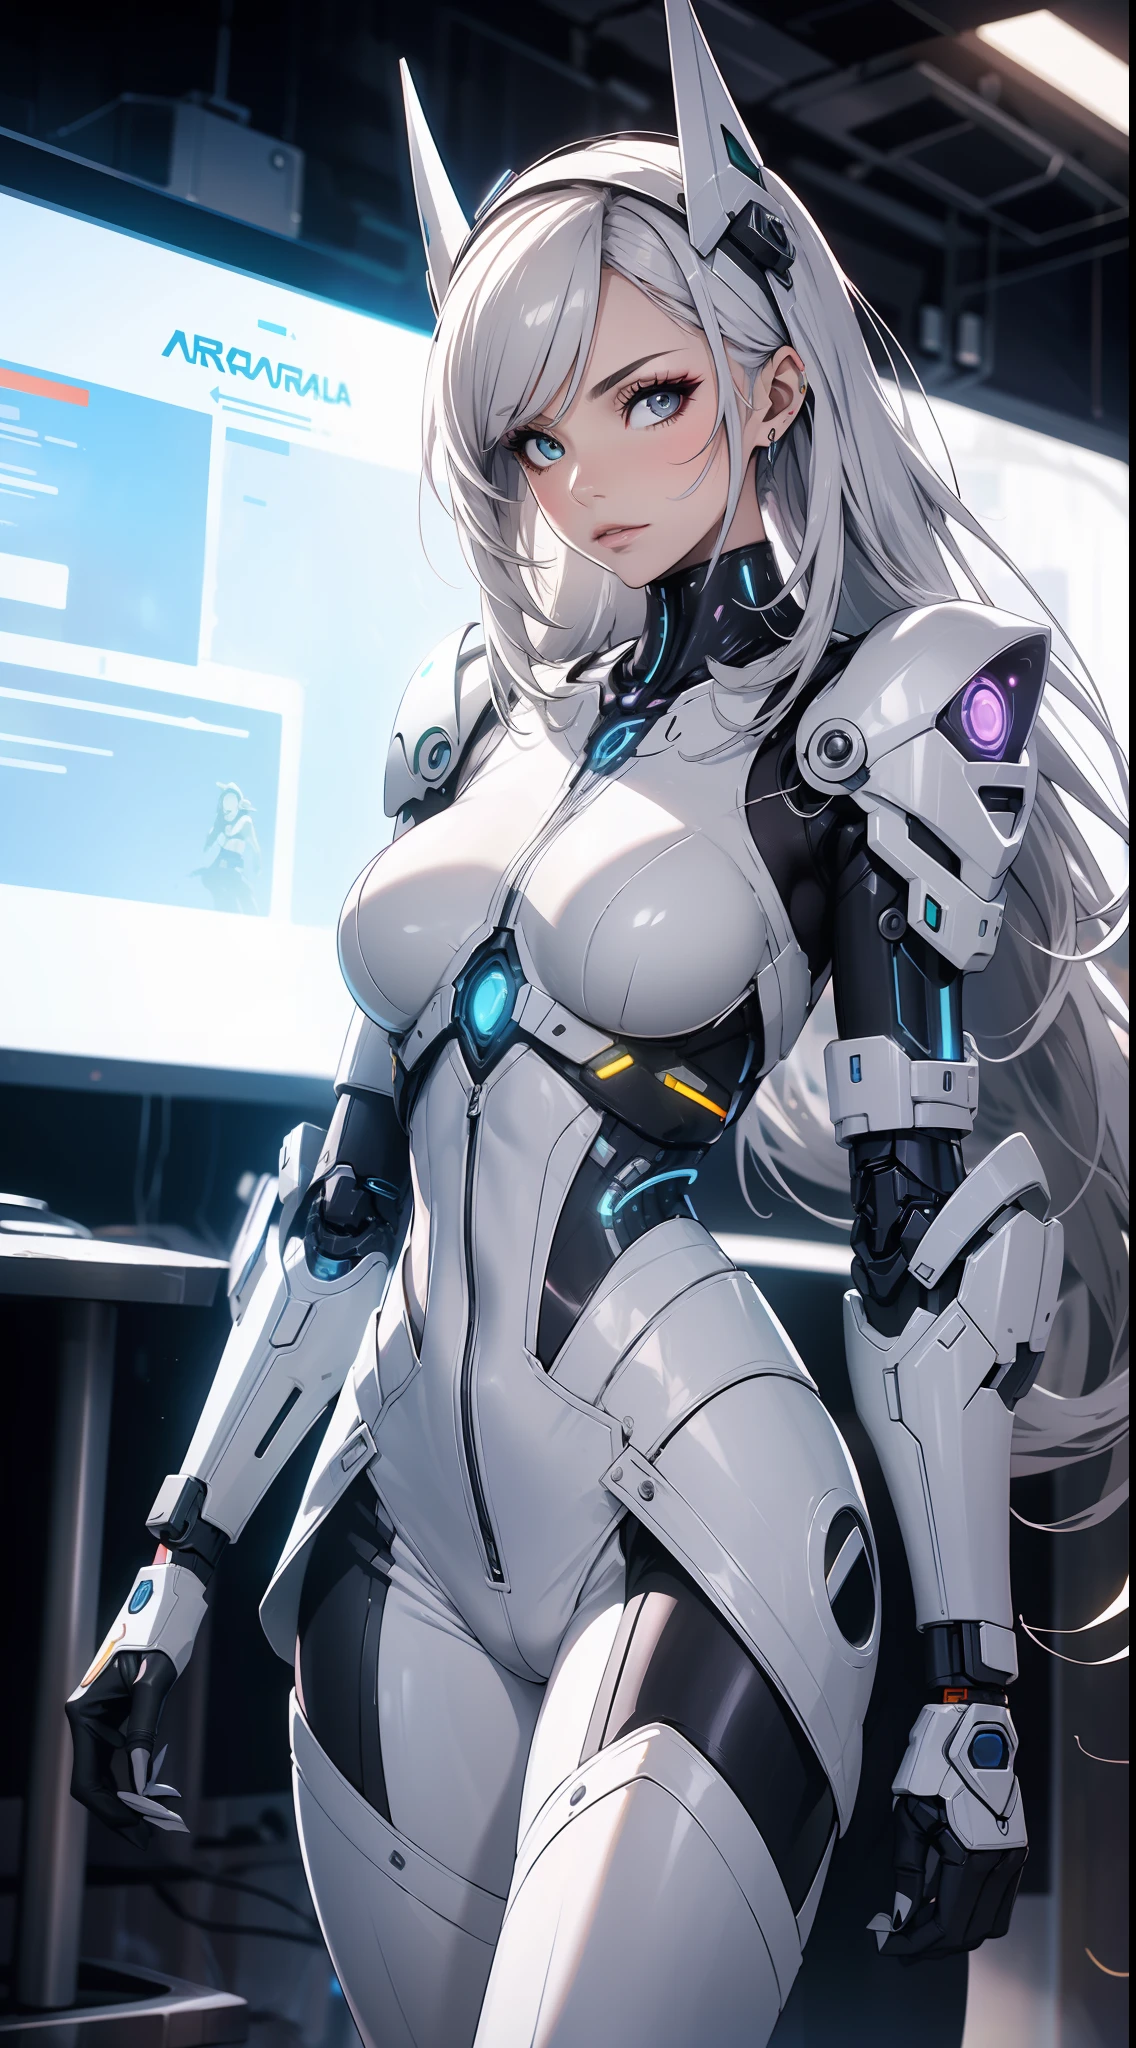 Arafed-Frau in einem futuristischen Anzug posiert für ein Foto, in weißer futuristischer Rüstung, Mädchen in Mecha-Cyber-Rüstung, Unwirkliches Engine-Rendering + eine Göttin, Cyborg-Rüstung aus Porzellan, strahlend weiße Rüstung, Gynoider Cyborg-Körper, Schöner und attraktiver weiblicher Cyborg, Verschiedene Cybersuits, Schöner weiblicher Cyborg, Schönes weißes Cyborg-Mädchen, Mit futuristischer Rüstung, Perfekter weiblicher Cyborg